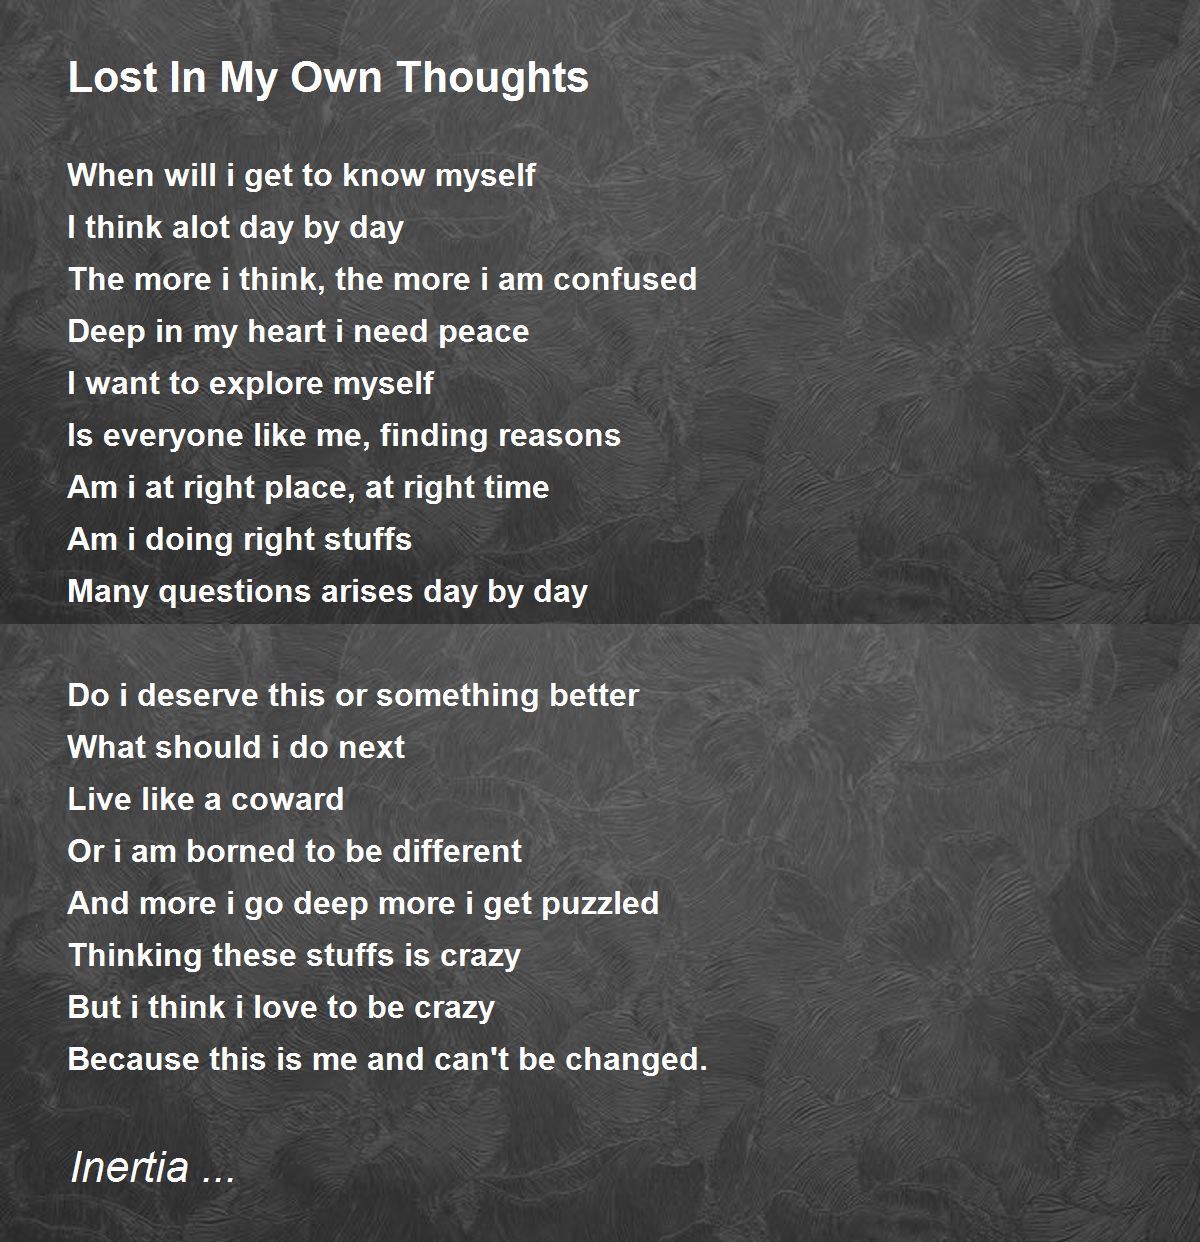 Lost In My Own Thoughts Lost In My Own Thoughts Poem By Inertia